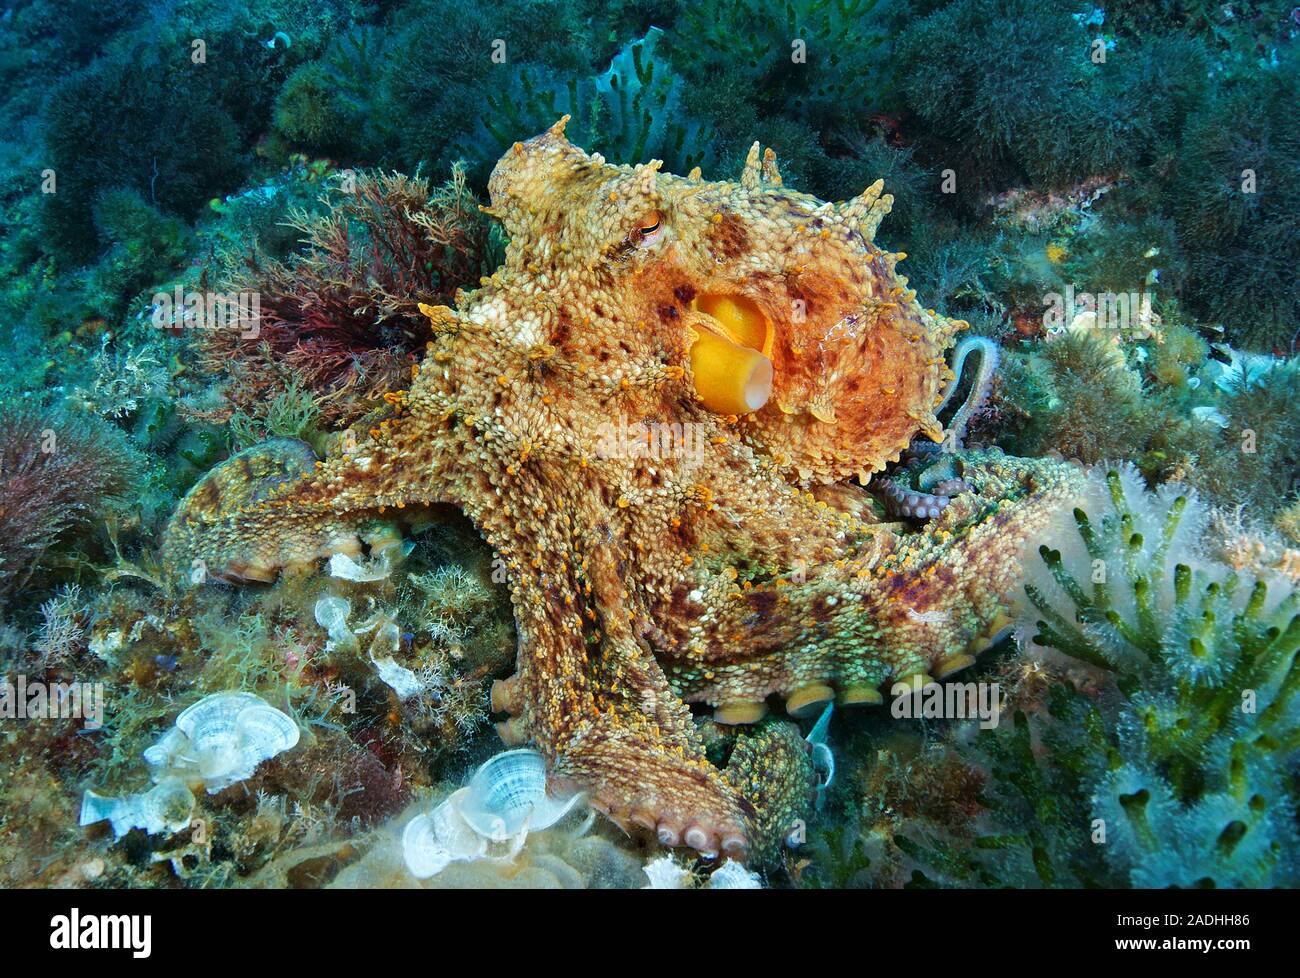 Poulpe commun (Octopus vulgaris), Majorque, îles Baléares, Espagne Banque D'Images